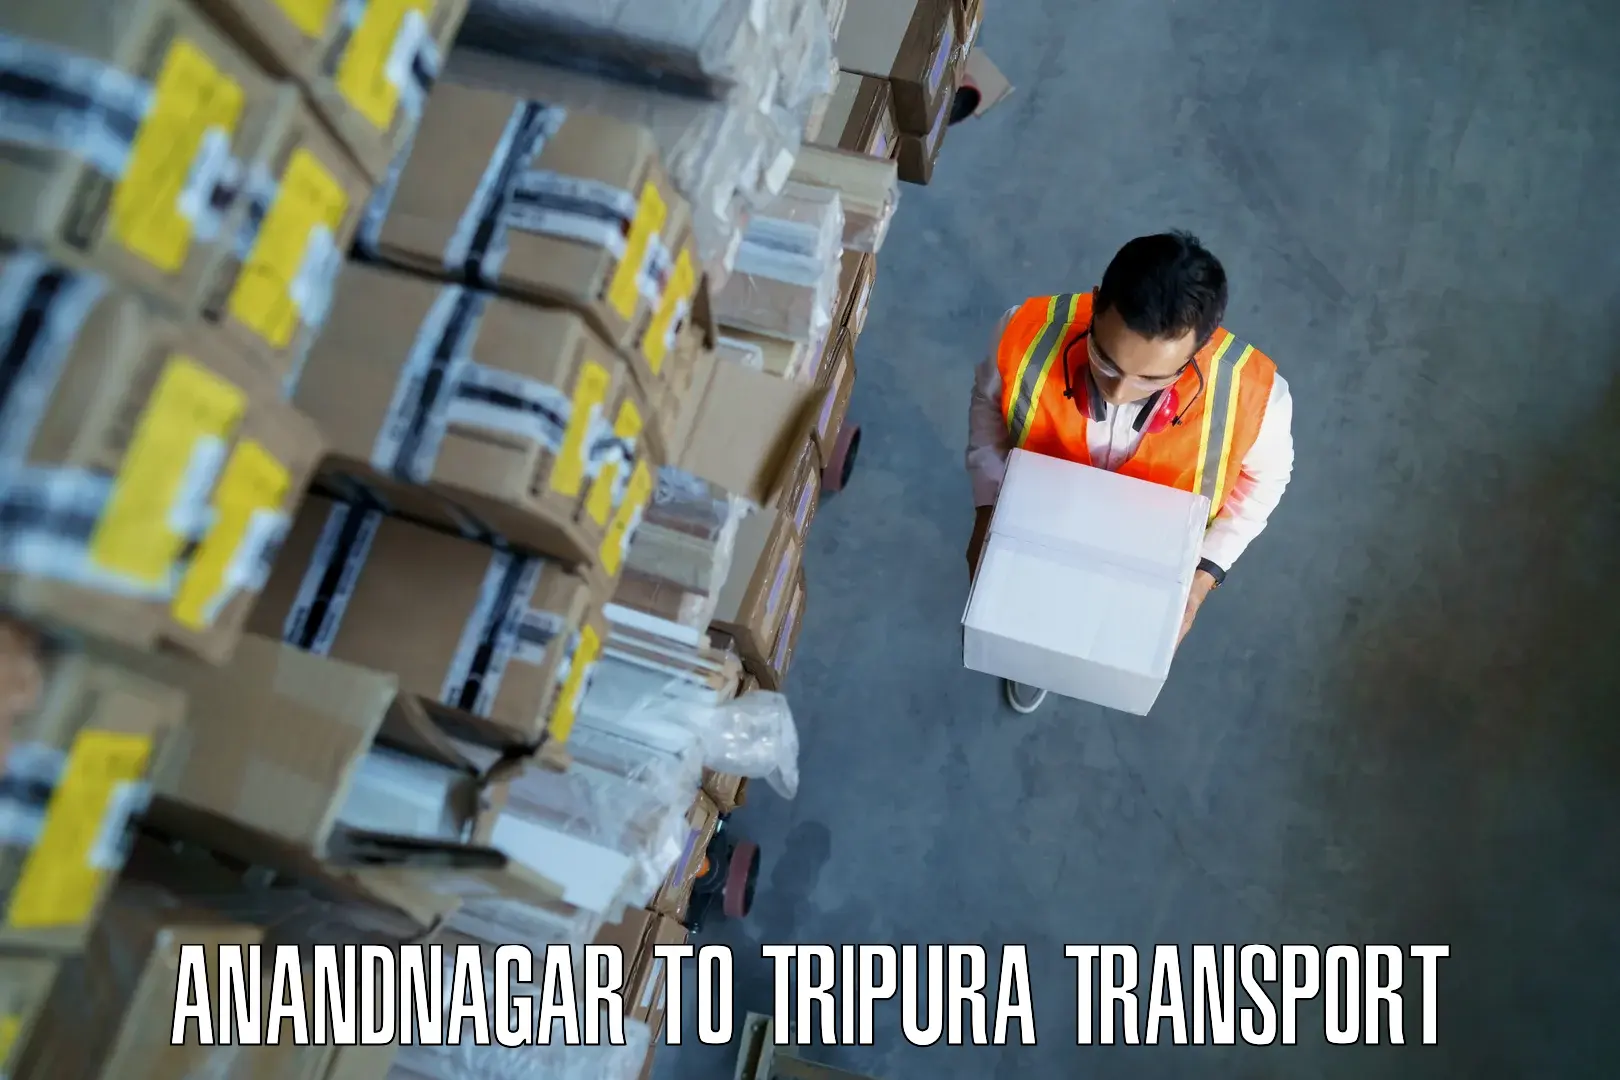 Transport in sharing Anandnagar to North Tripura